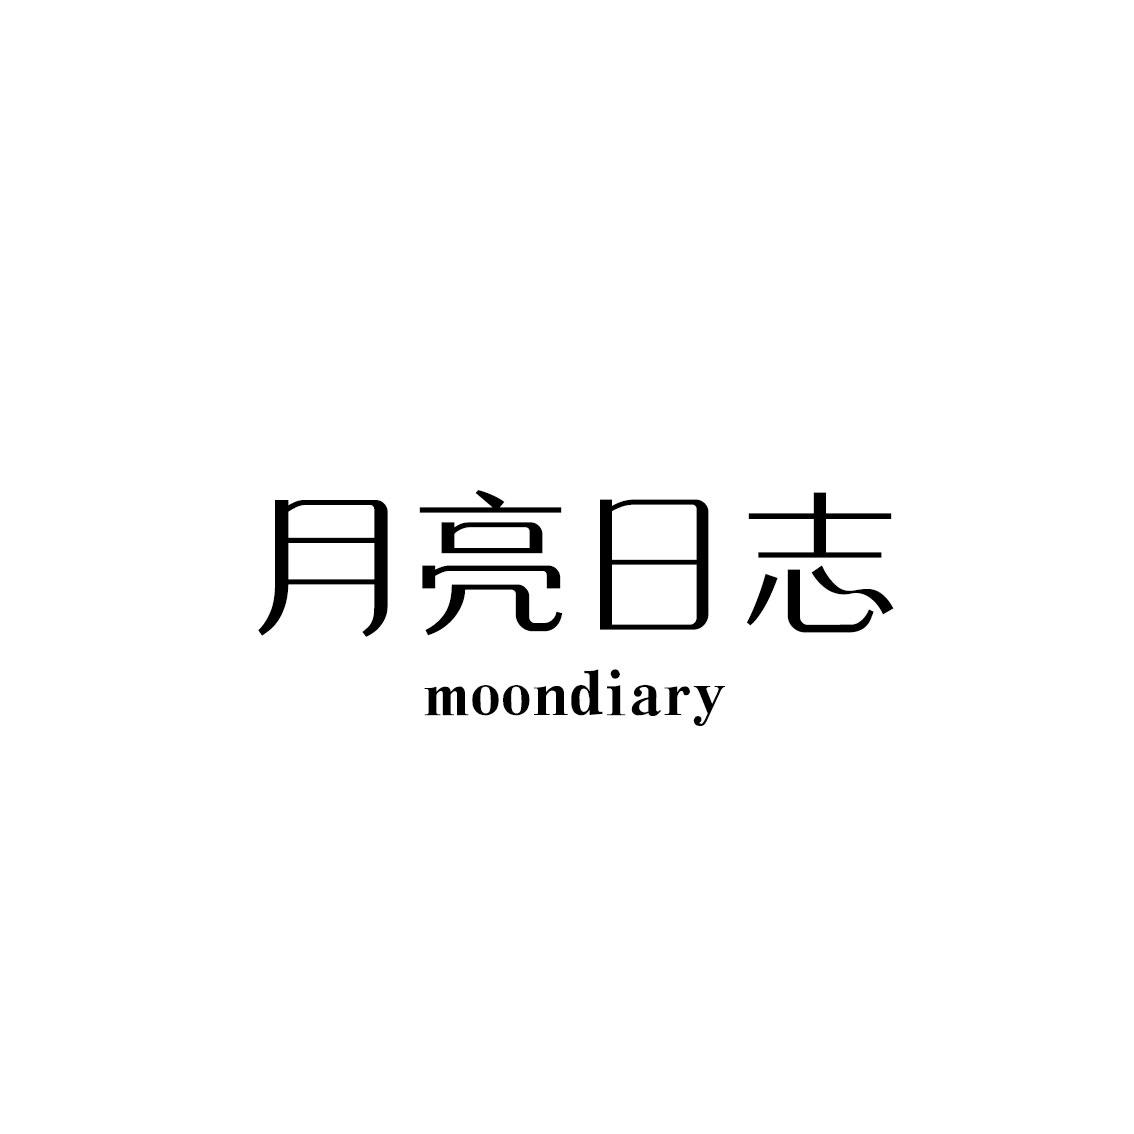 月亮日志 MOONDIARY商标转让